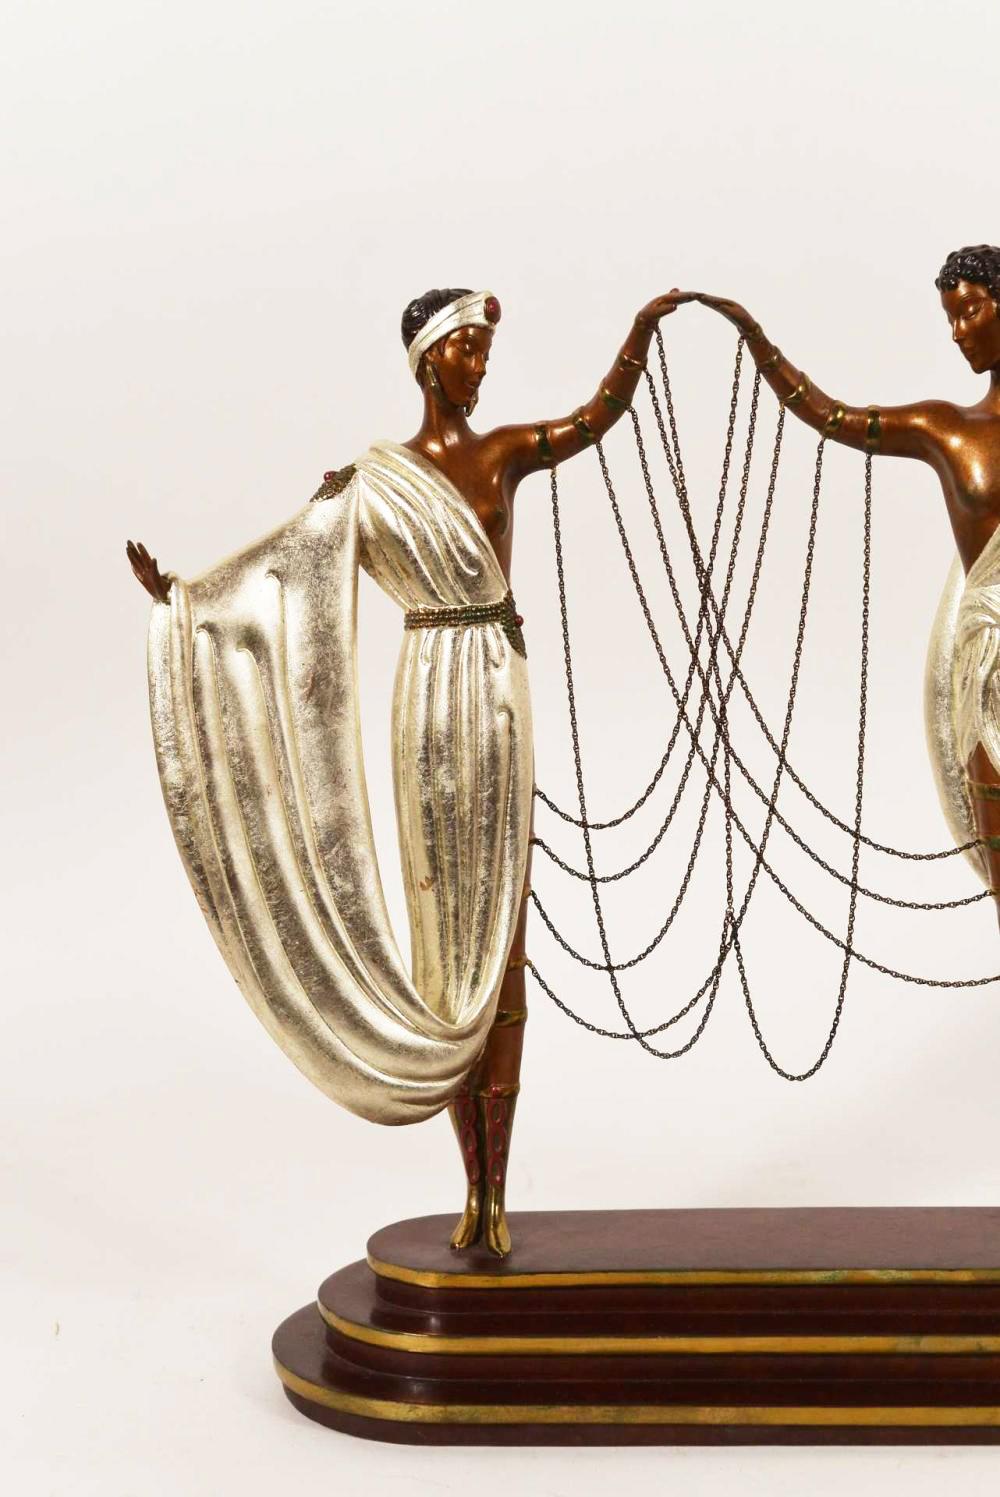 ERTE (ROMAIN DE TIRTOFF) 'THE WEDDING' BRONZE SCULPTURE - Art Deco Sculpture by Erte - Romain de Tirtoff